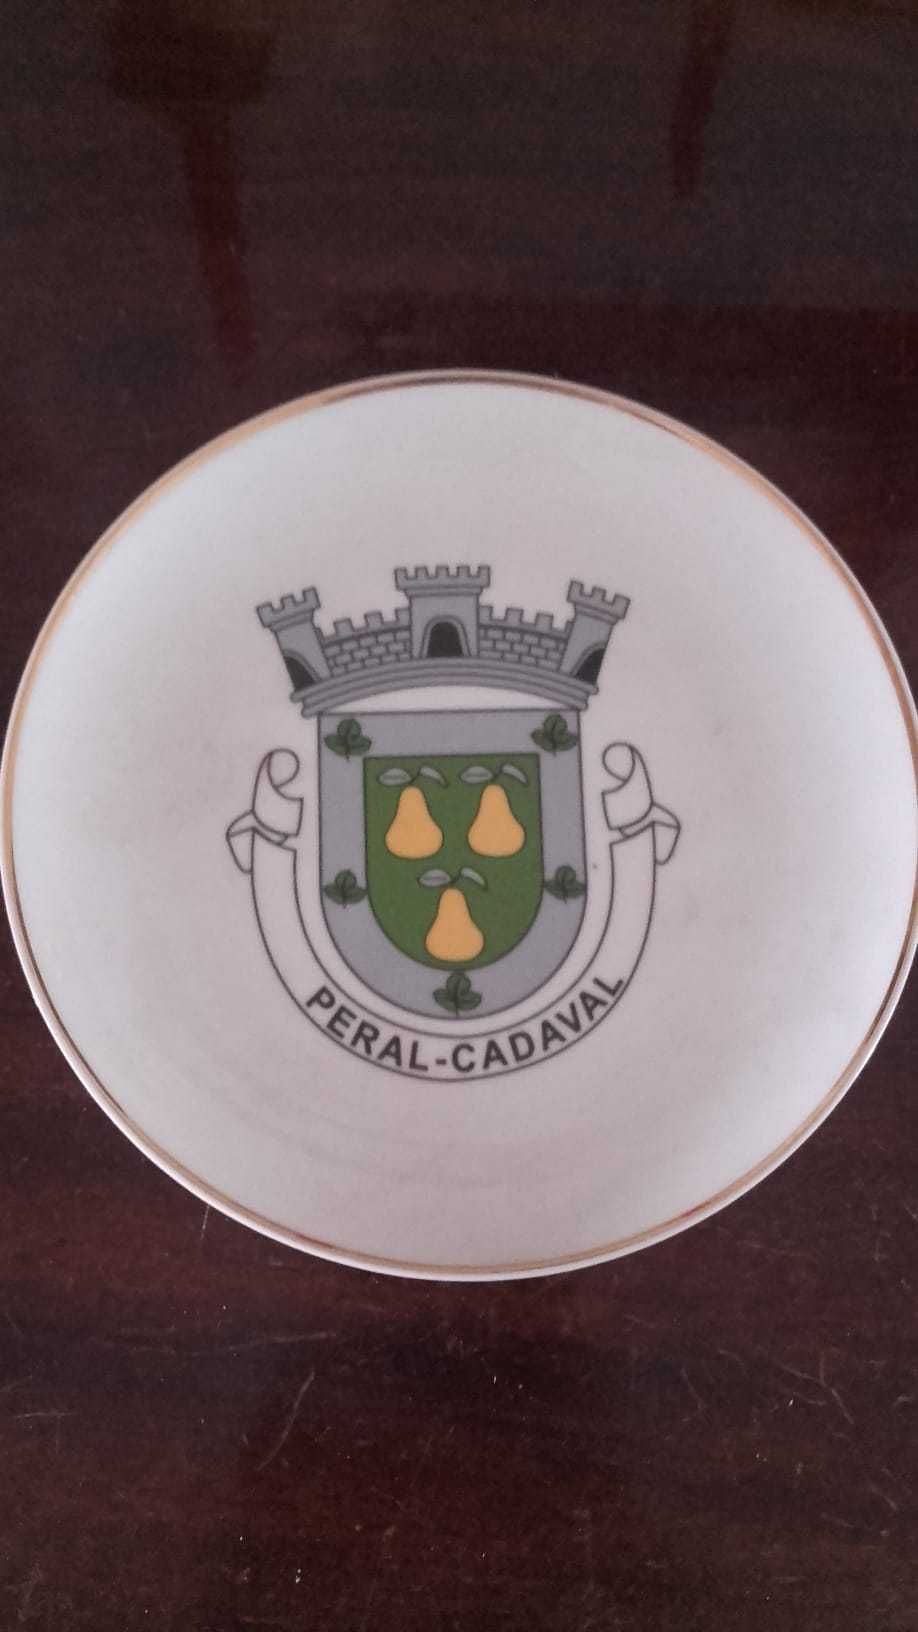 brasão da Freguesia de Peral, Cadaval: medalha, estandarte e prato